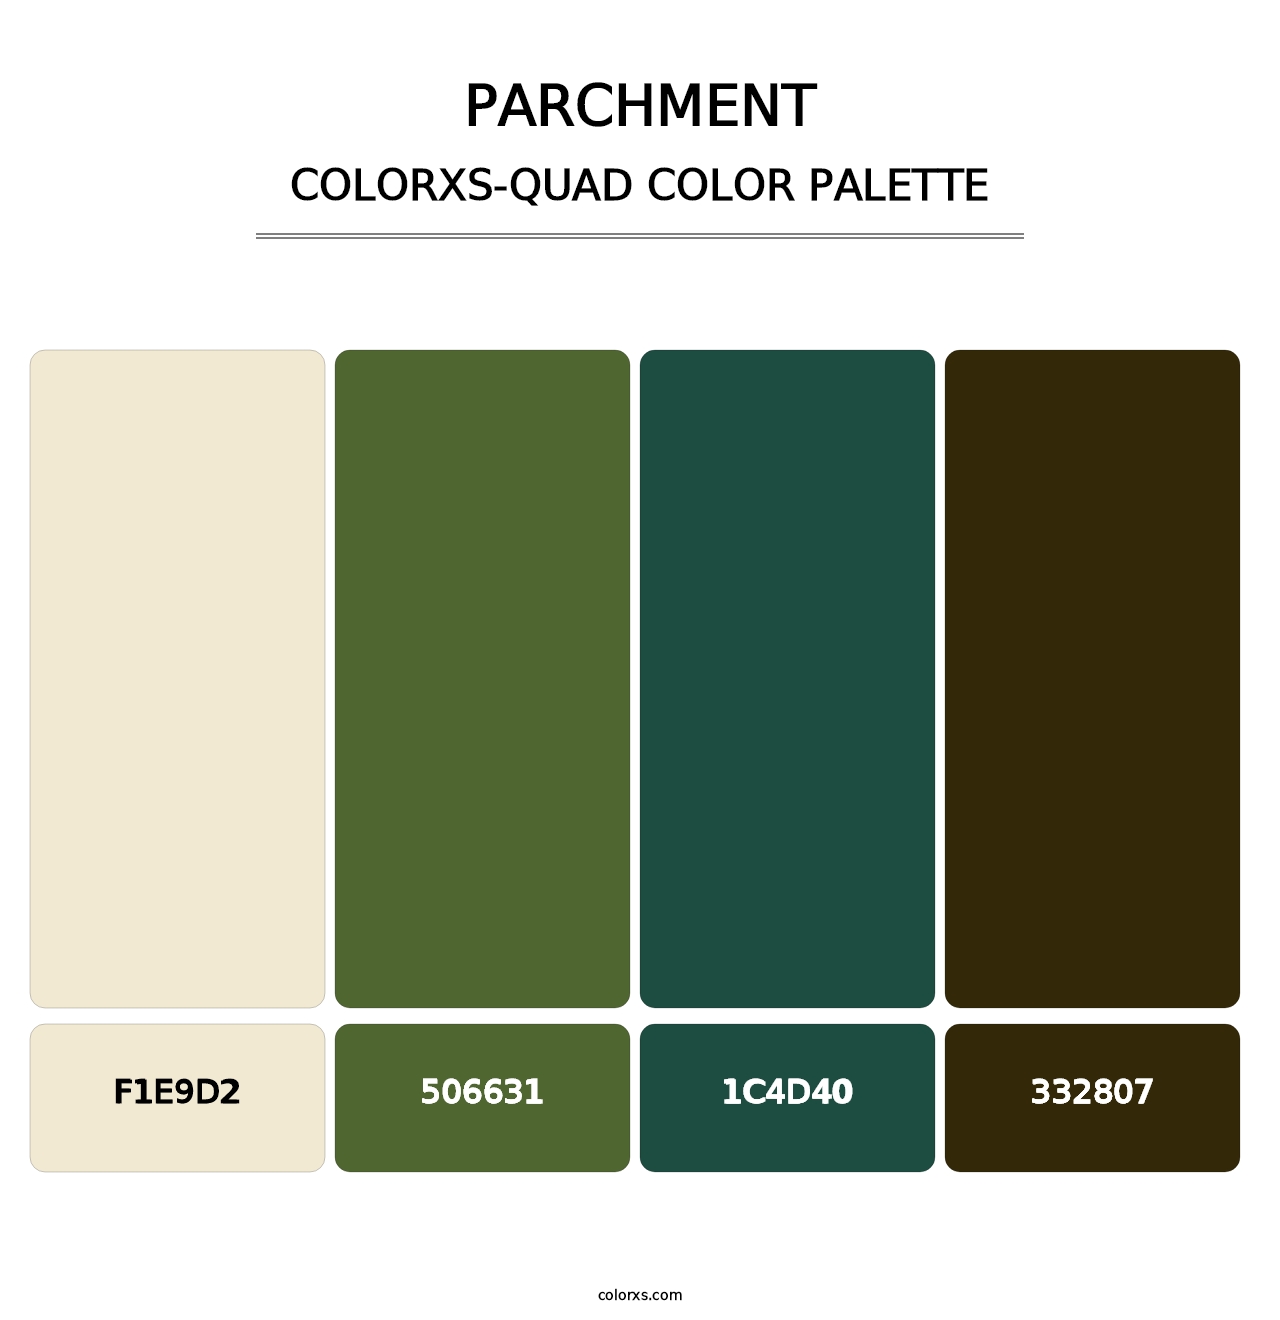 Parchment - Colorxs Quad Palette